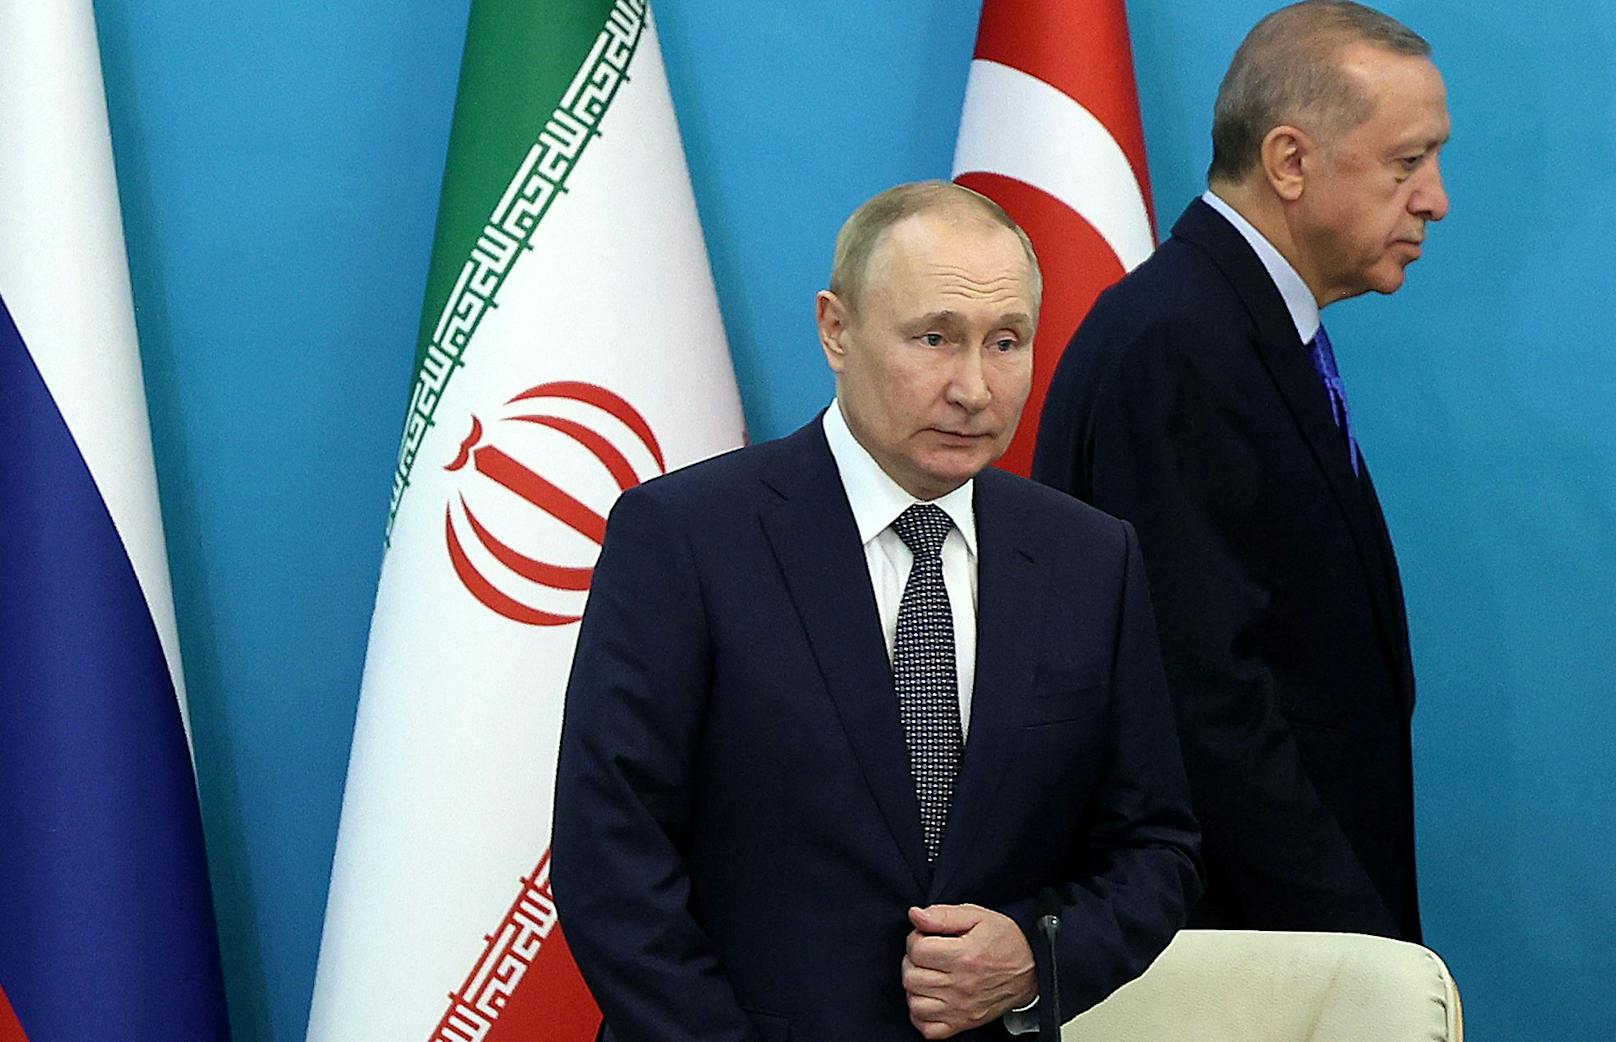 Ukrainische Kreise behaupten, dass ein Double den russischen Präsidenten Wladimir Putin beim Dreier-Gipfel – zusammen mit dem türkischen Präsidenten Recep Tayyip Erdogan und Irans Präsident Ebrahim Raisi – in Teheran am 19.07.2022 vertreten haben soll.